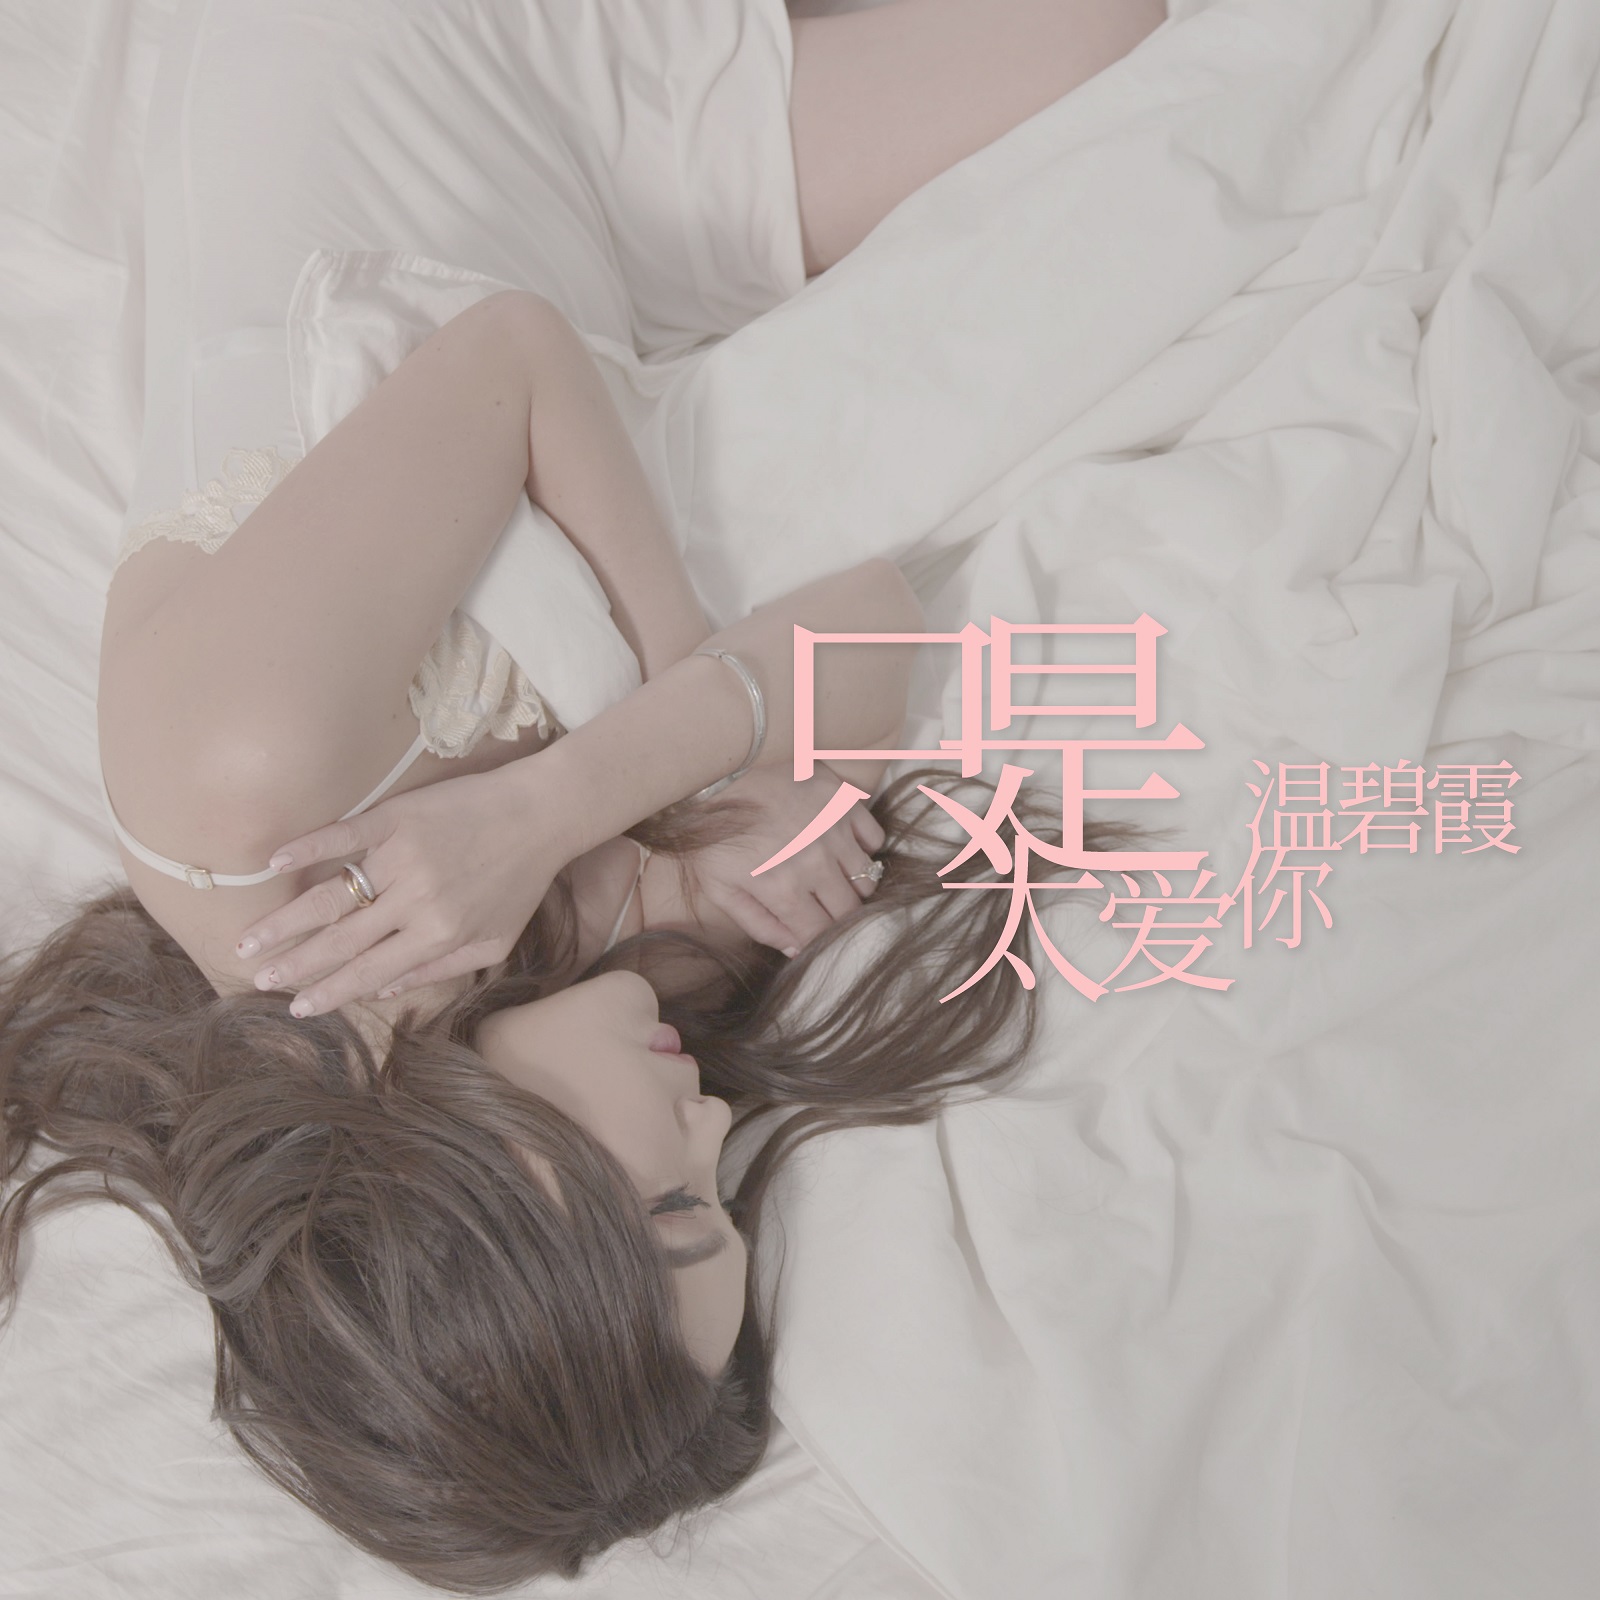 温碧霞新歌《只是太爱你》音频MV同步上线女性视角诠释爱情中的执着与深情